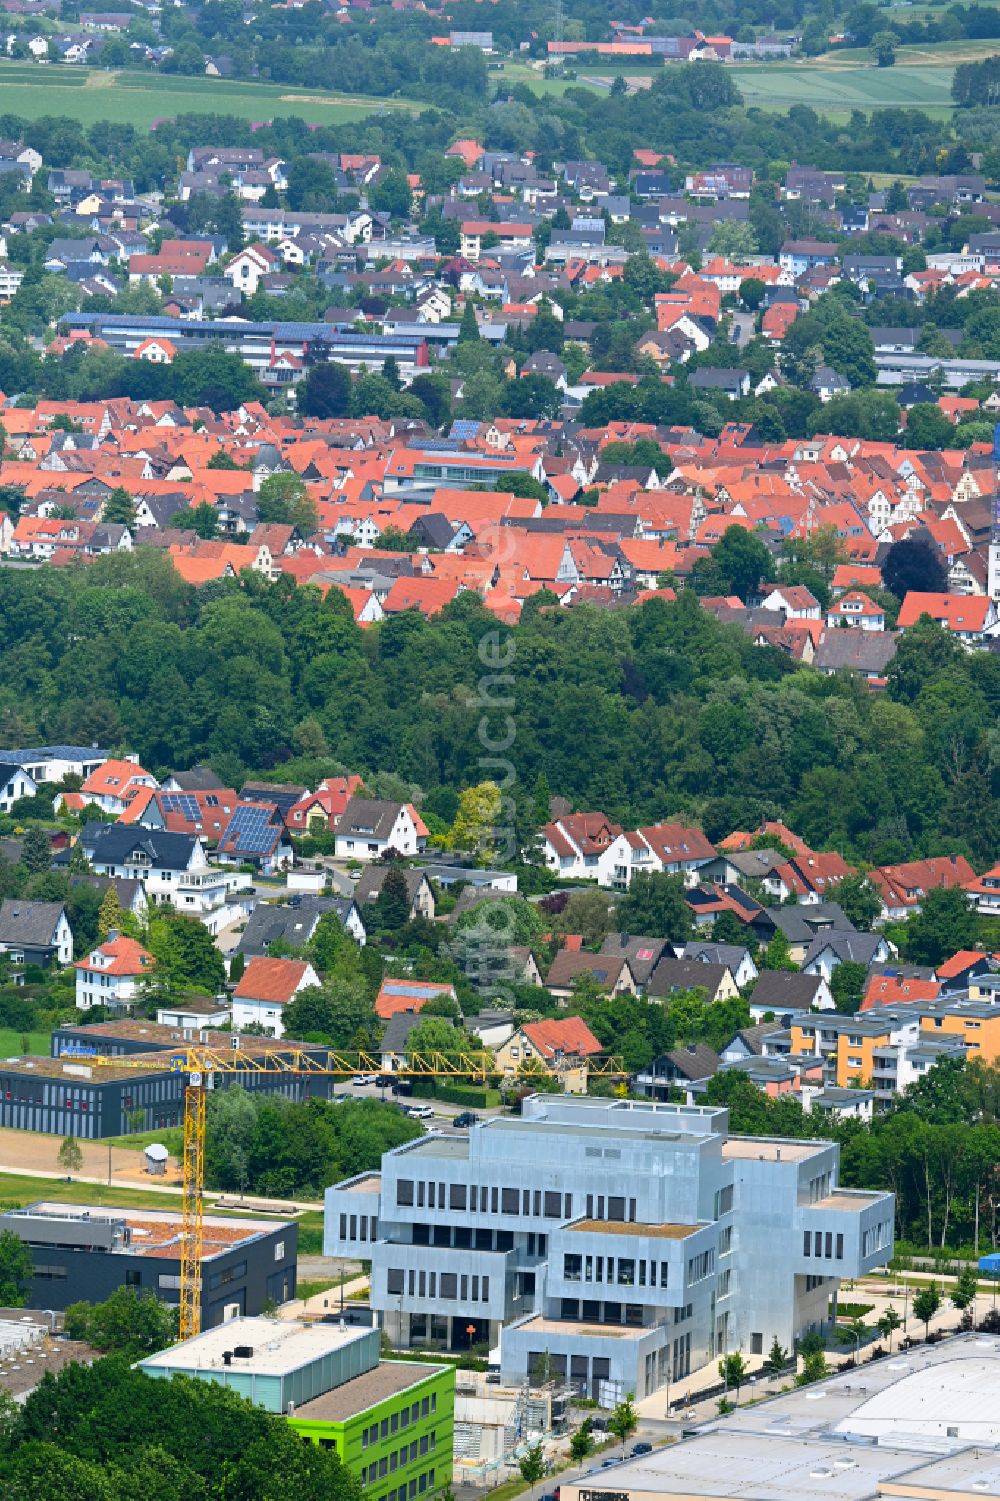 Luftaufnahme Lemgo - Campus- Universitäts- Bereich InnovationSPIN in Lemgo im Bundesland Nordrhein-Westfalen, Deutschland